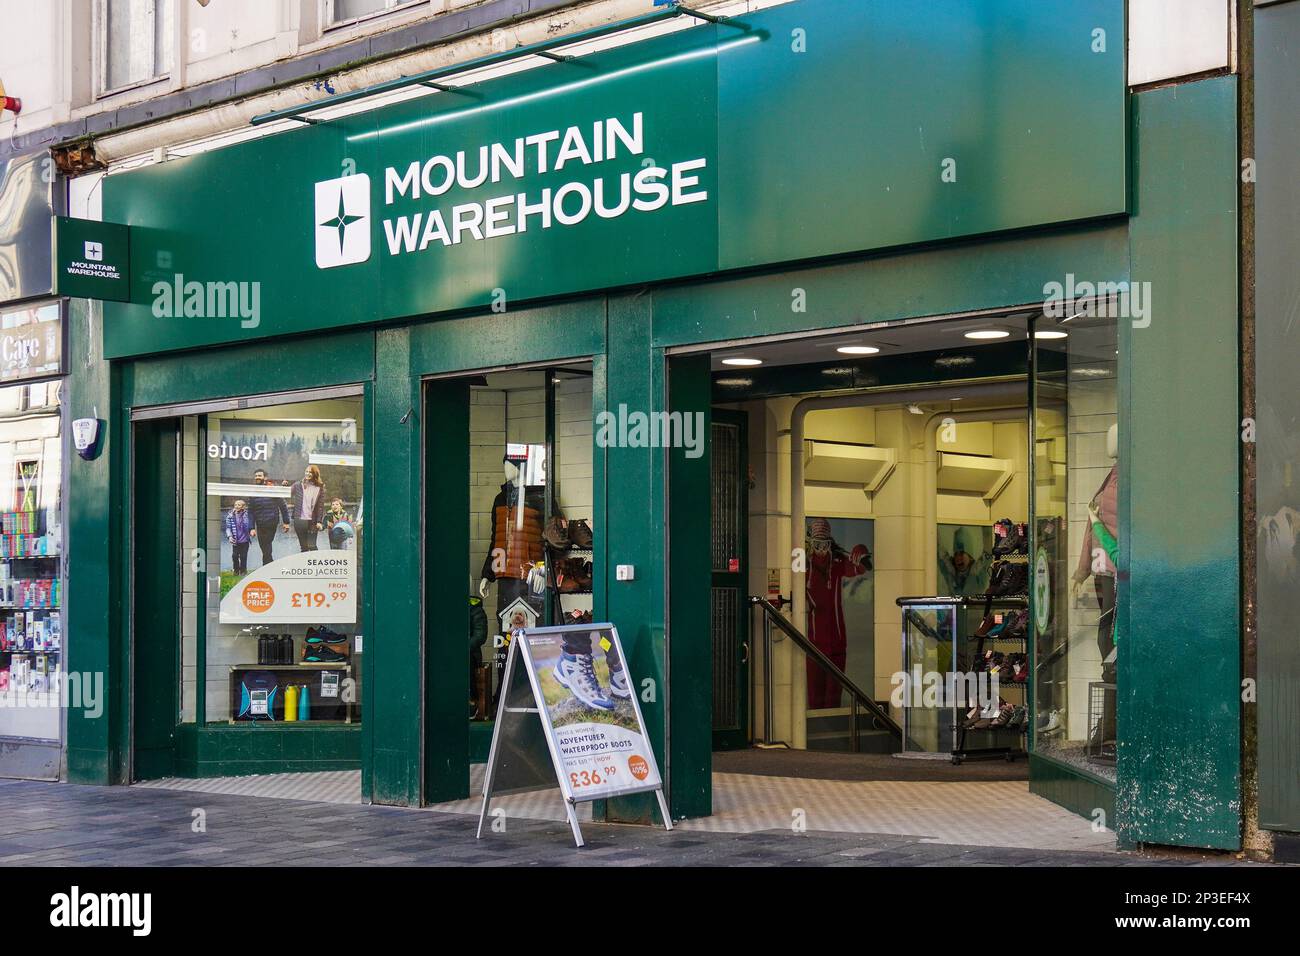 Entrée et extérieur du magasin de vêtements et de vêtements d'extérieur Mountain Warehouse, Sauchiehall Street, Glasgow, Écosse, Royaume-Uni Banque D'Images